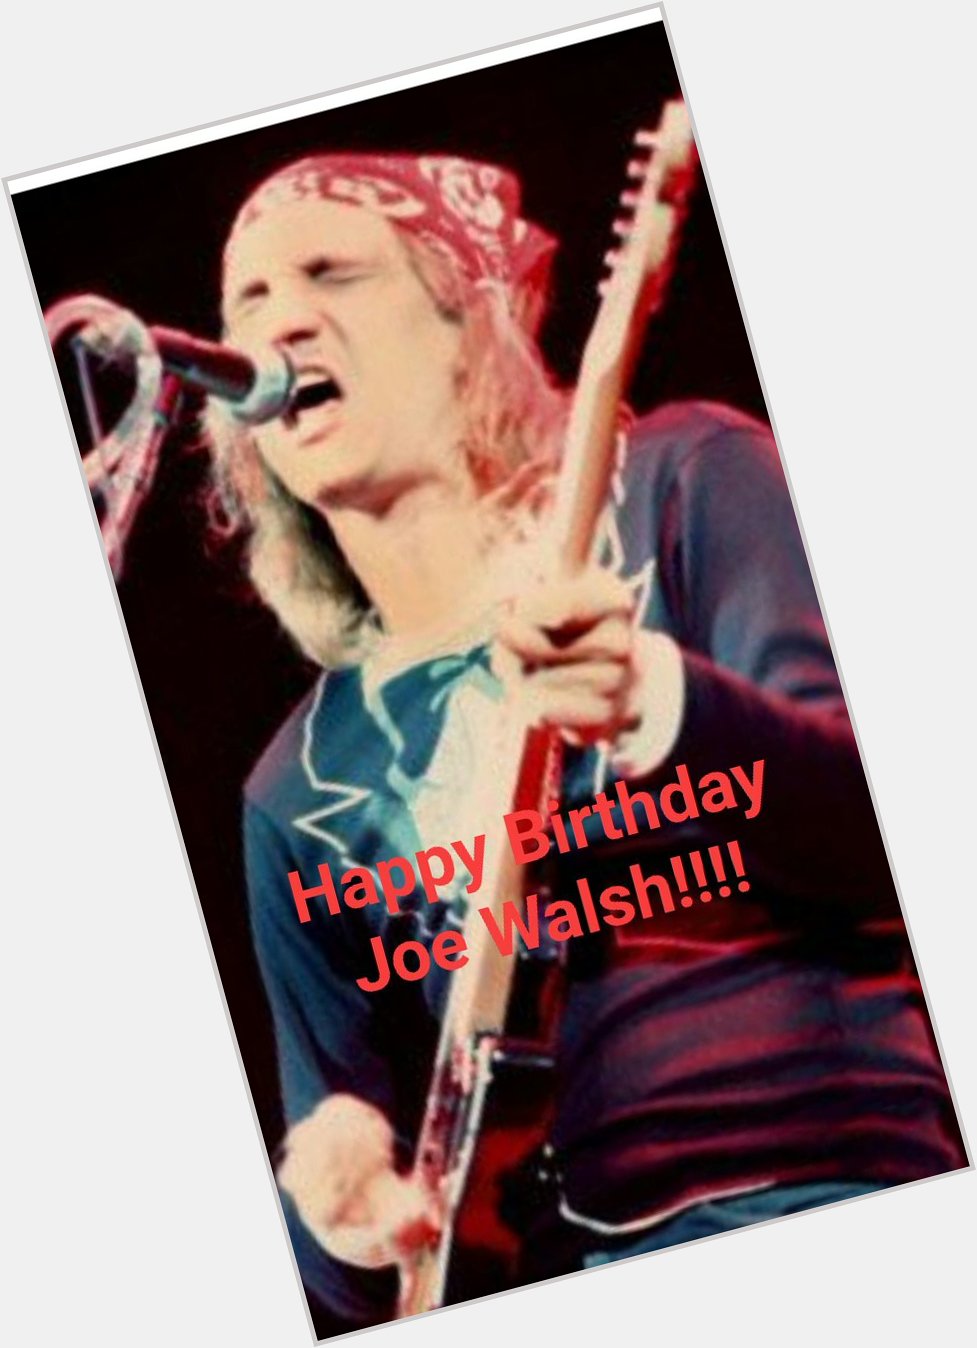 Happy Birthday Joe Walsh!!!       